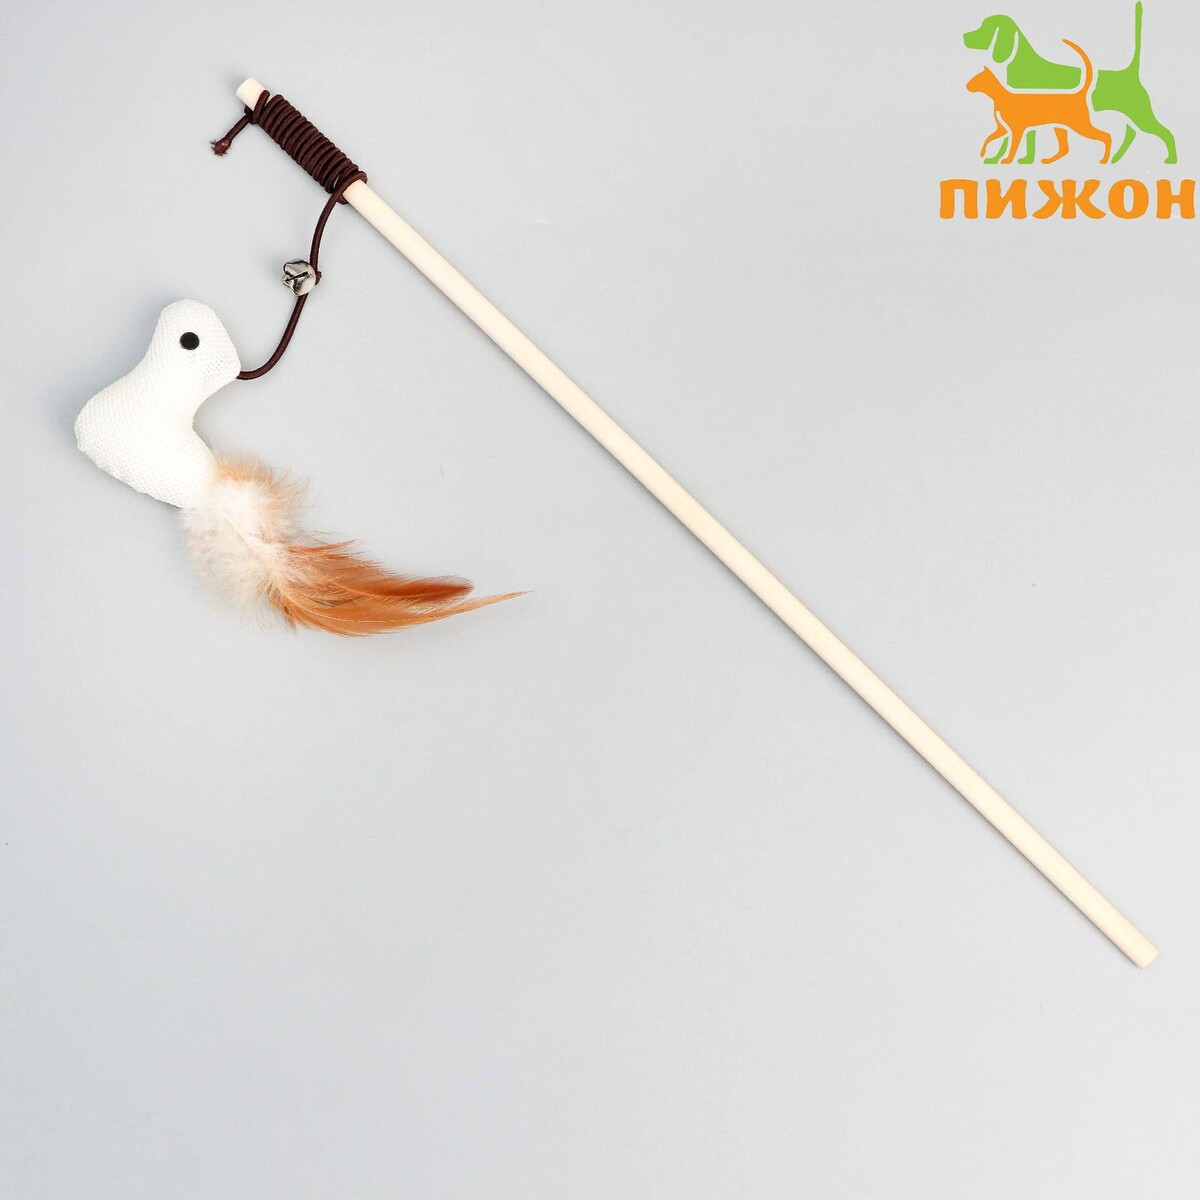 Дразнилка-удочка из эко-материалов игра поймай ка рыбки удочка с крючком деревянные игрушки владимир